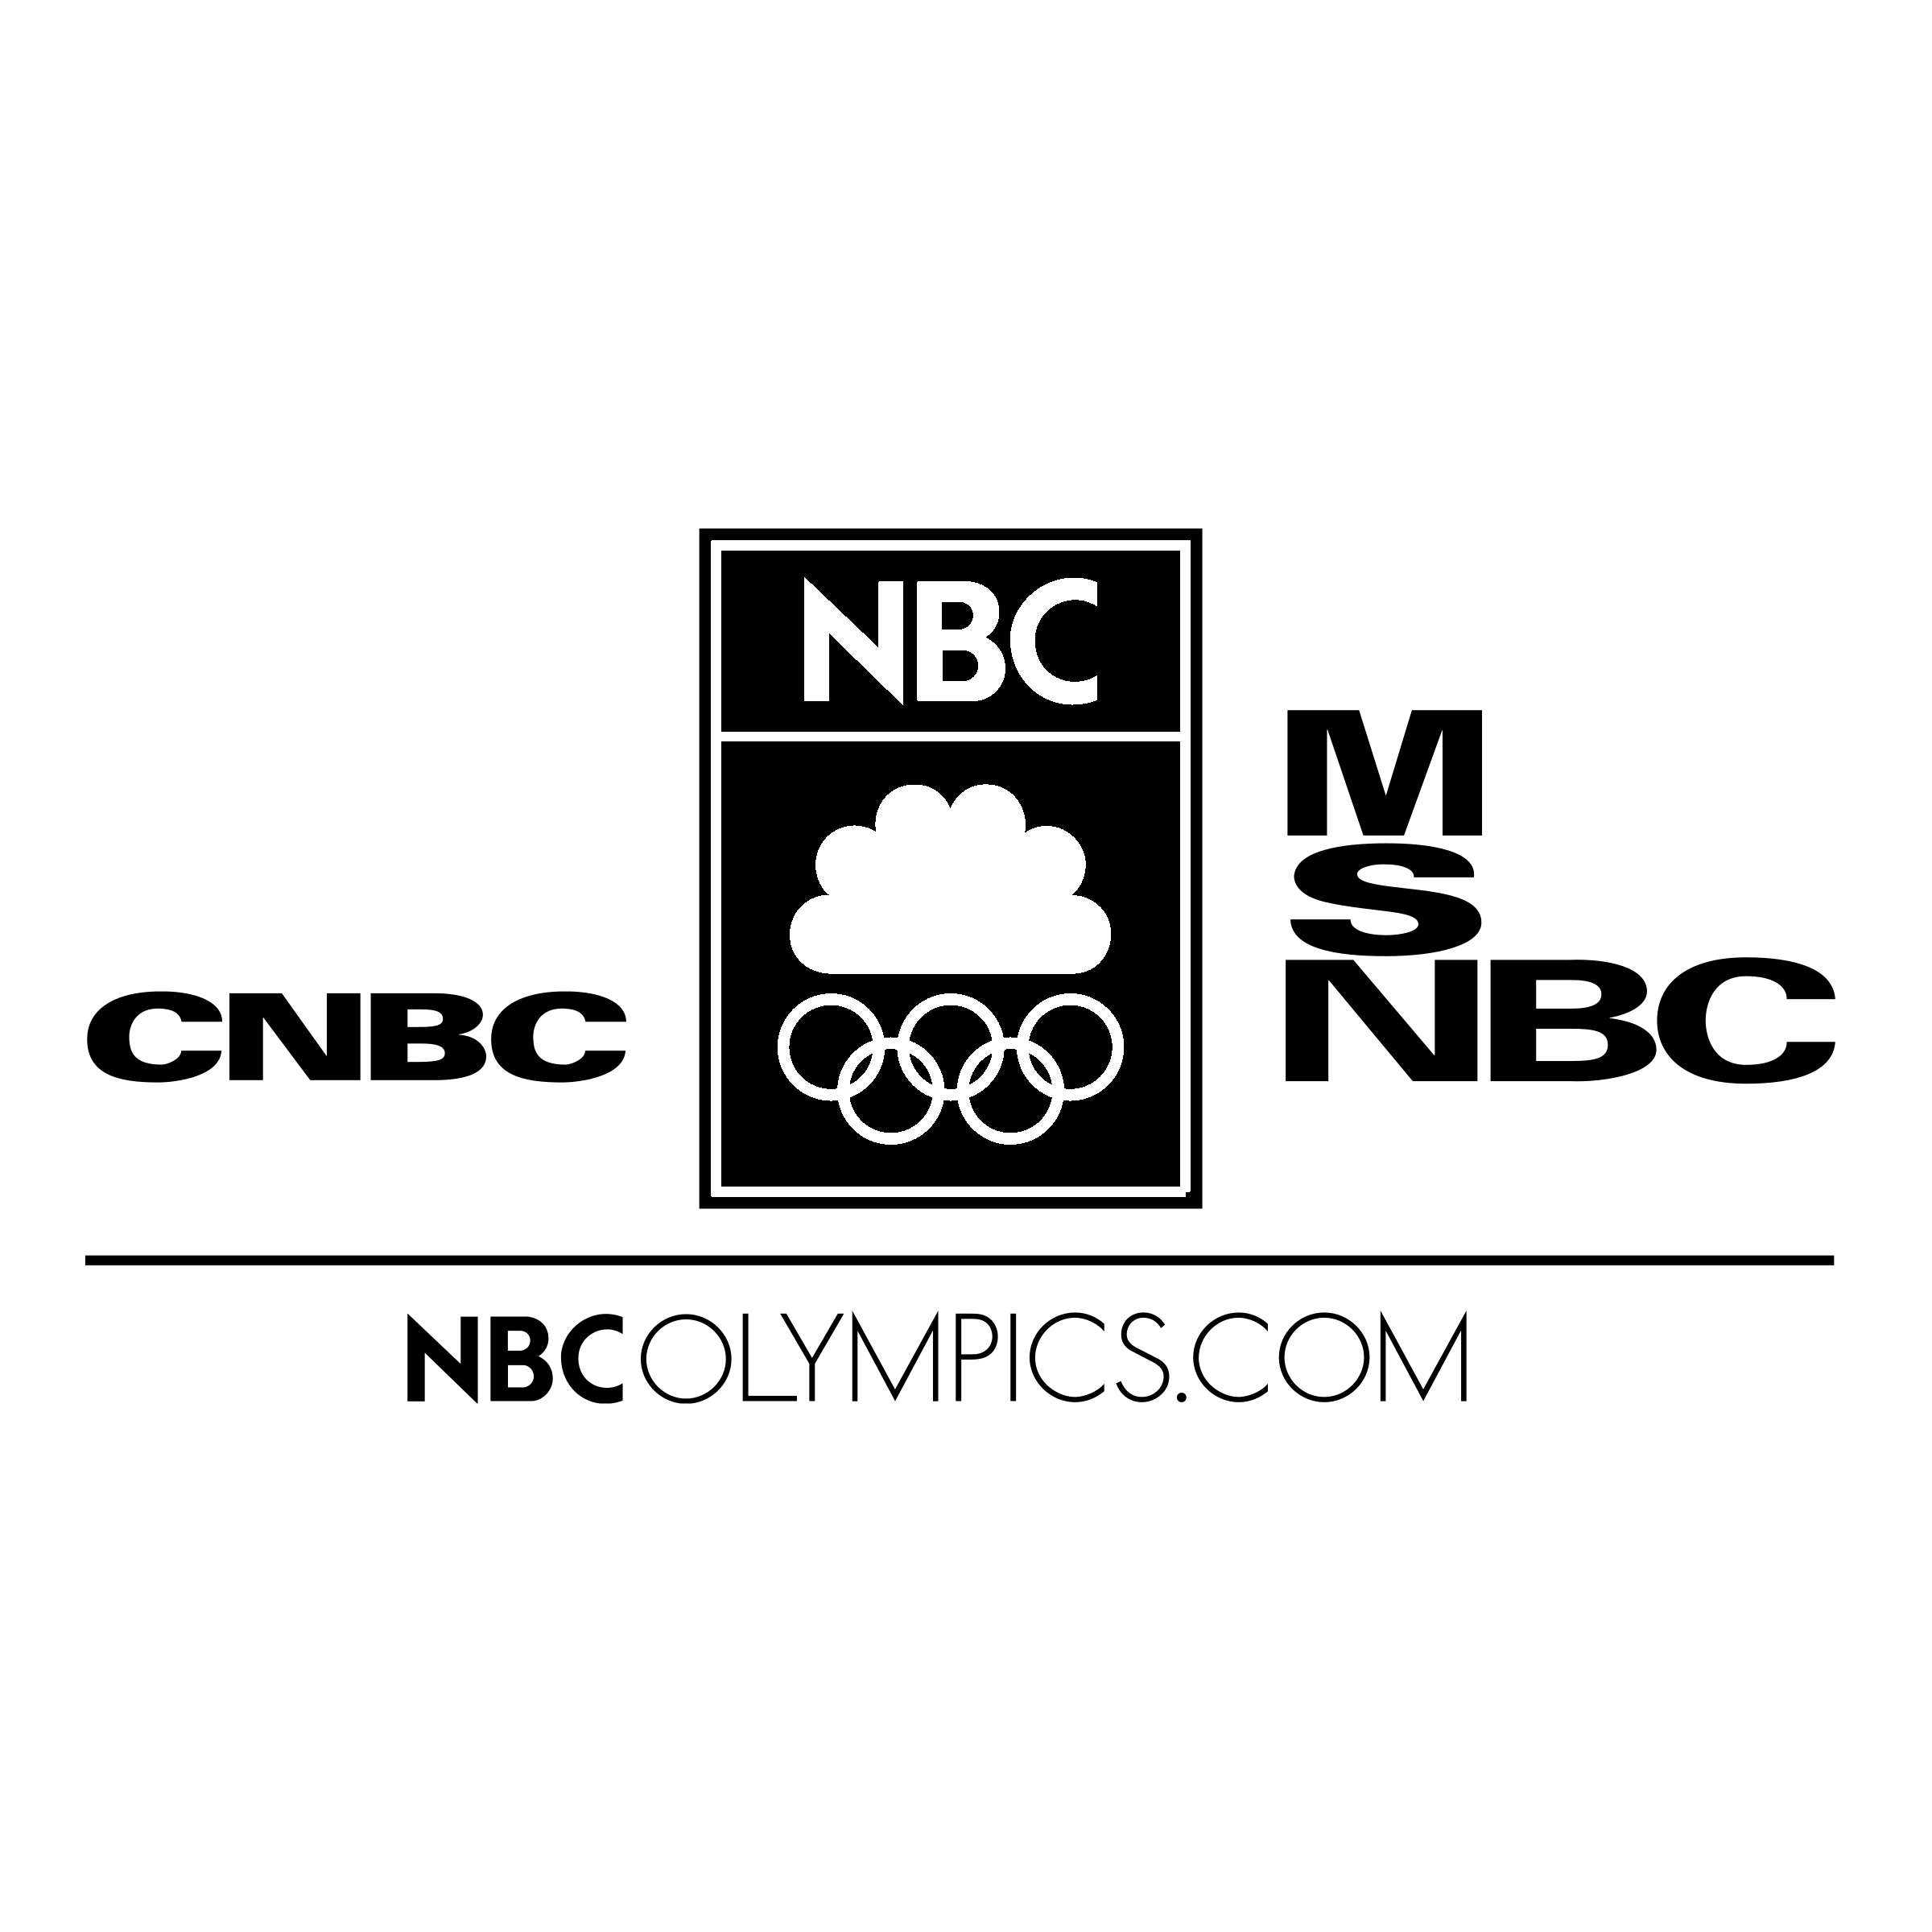 Nbcolympics.com Logo - NBC Olympics Logo PNG Transparent & SVG Vector